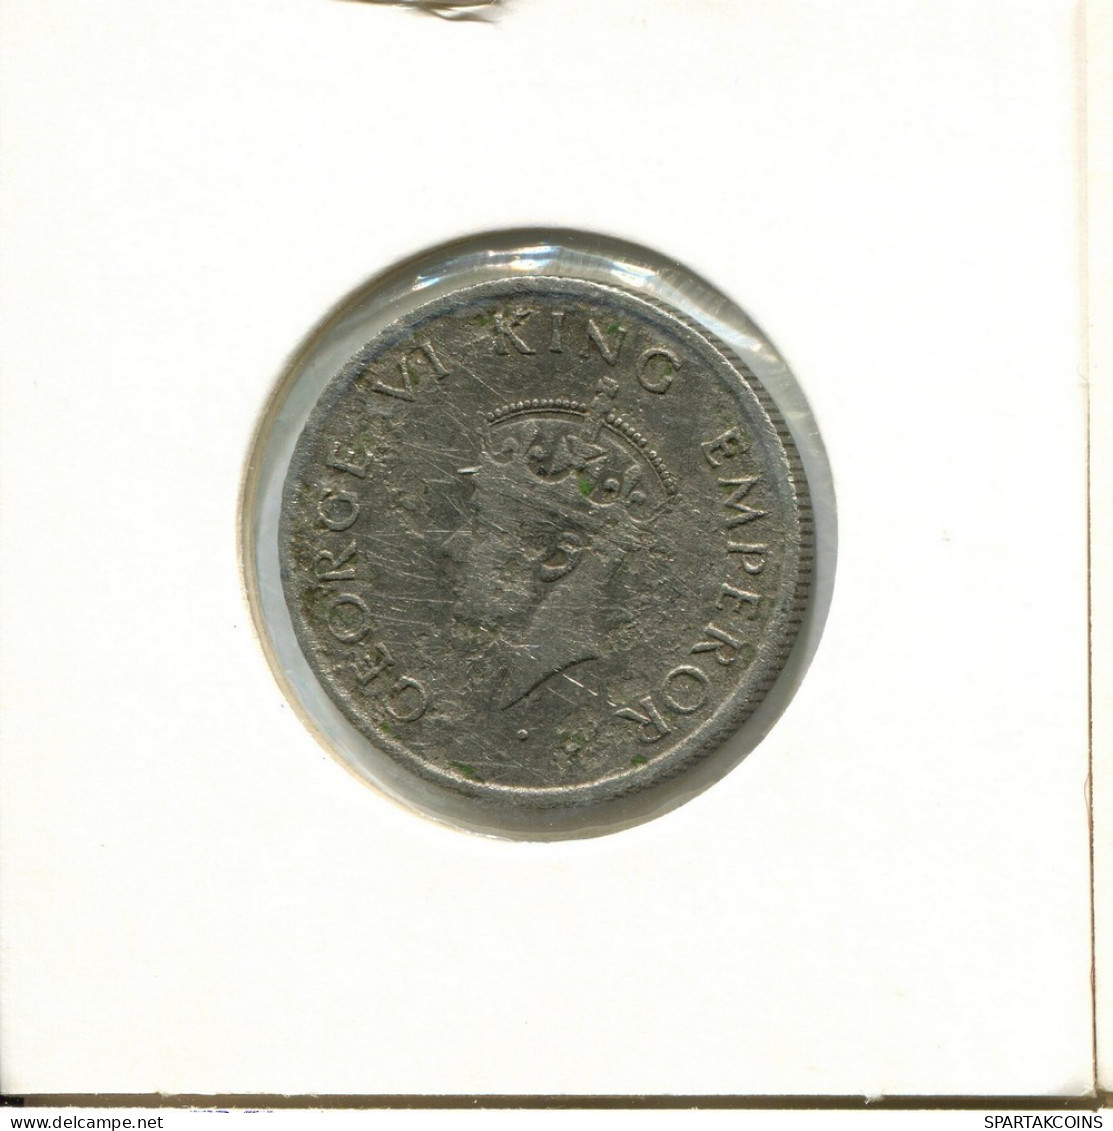 1/2 RUPEE 1947 INDIA Moneda #AY802.E.A - India